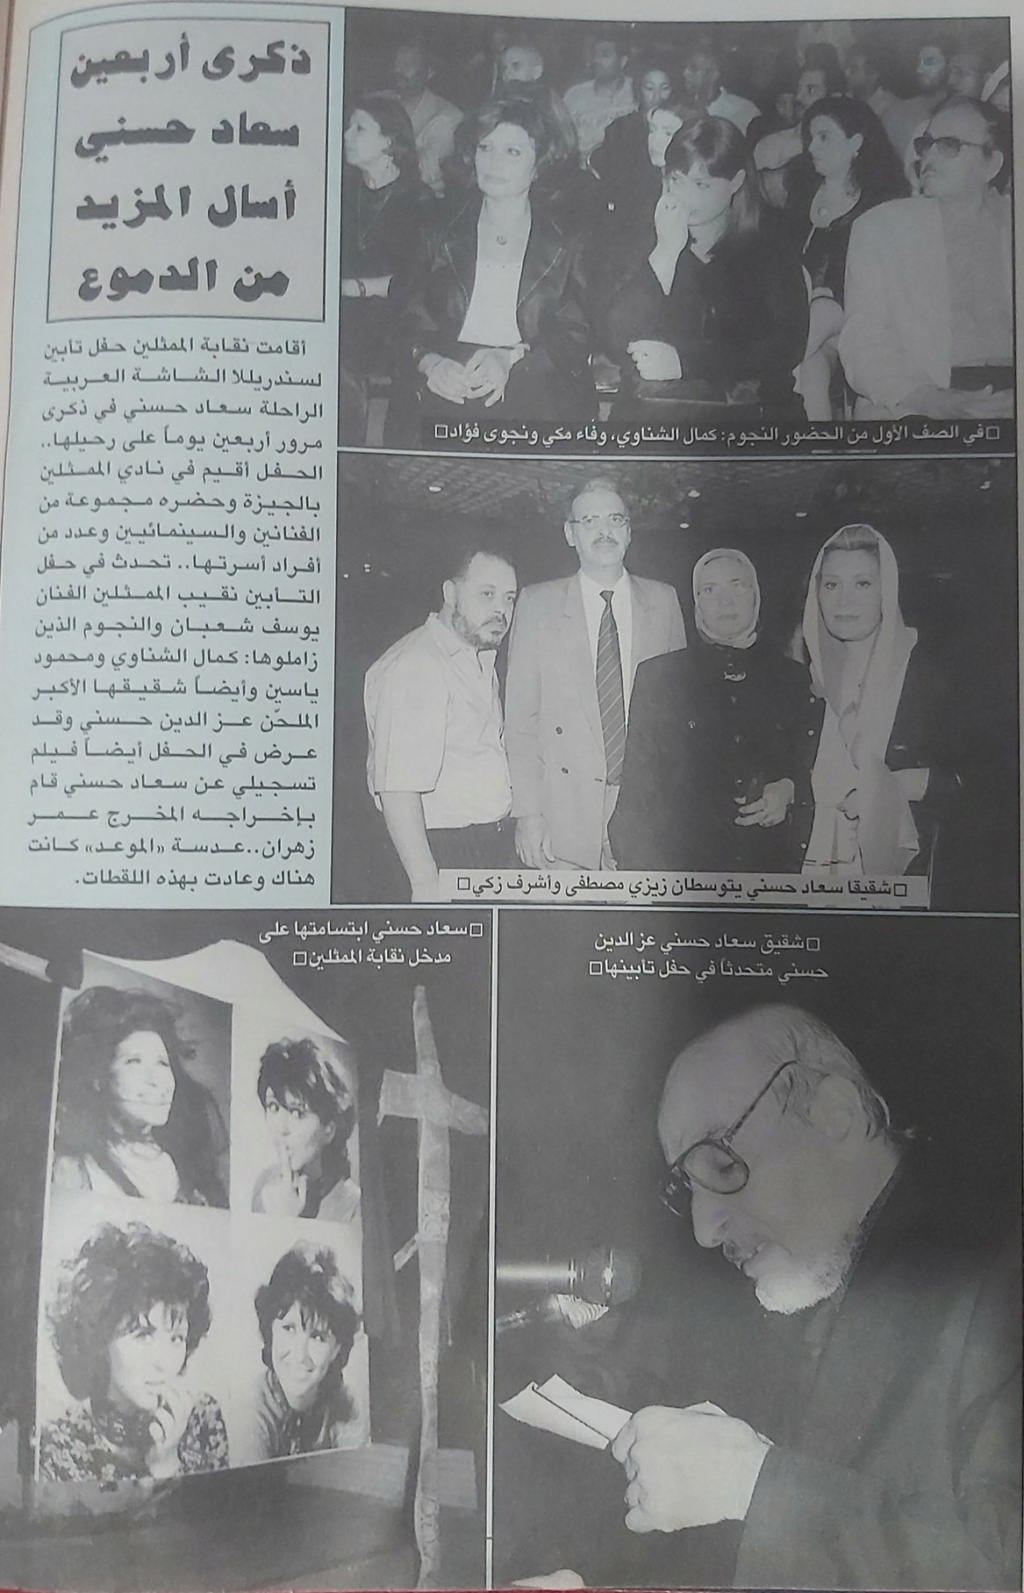 خبر صحفي : ذكرى أربعين سعاد حسني أسال المزيد من الدموع 2001 م Ao_eoo10